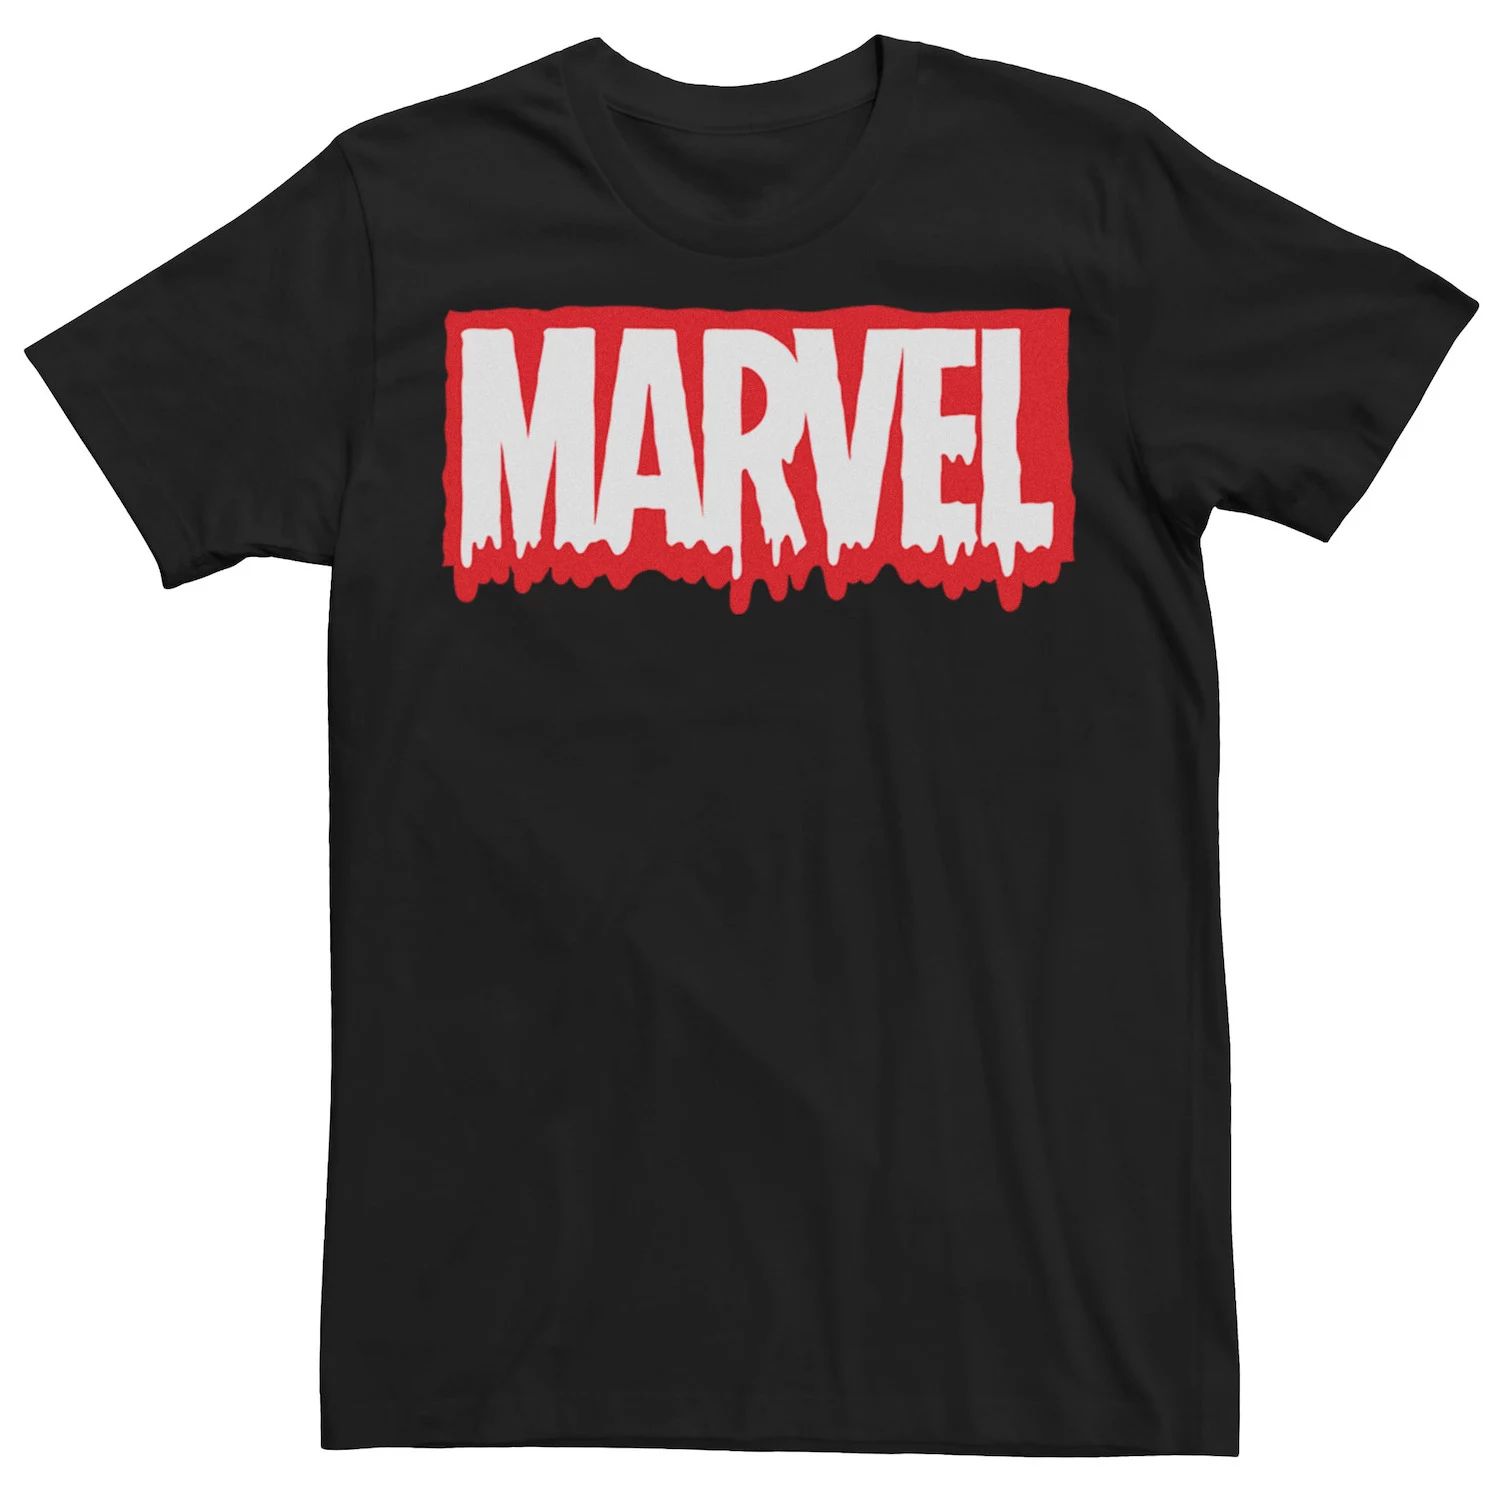 Мужская футболка с графическим логотипом Marvel Melting